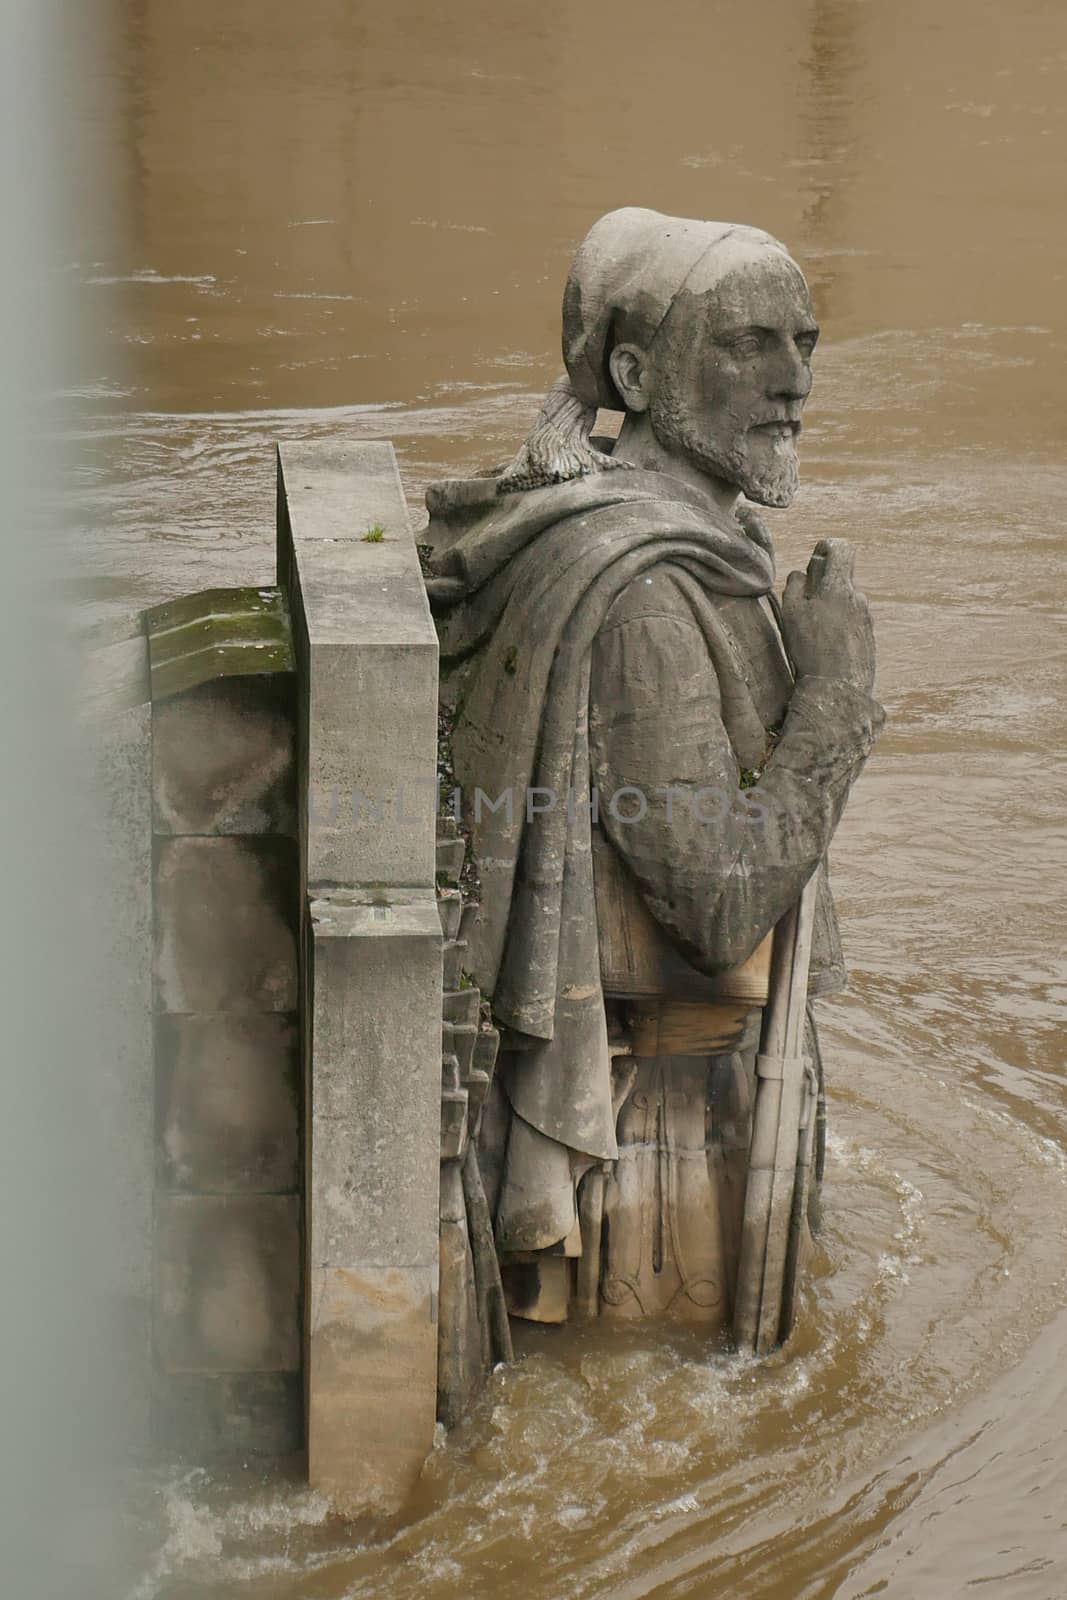 Zouave statue is most famous feature of Pont de Alma, Zouave statue shows how high Seine has risen.